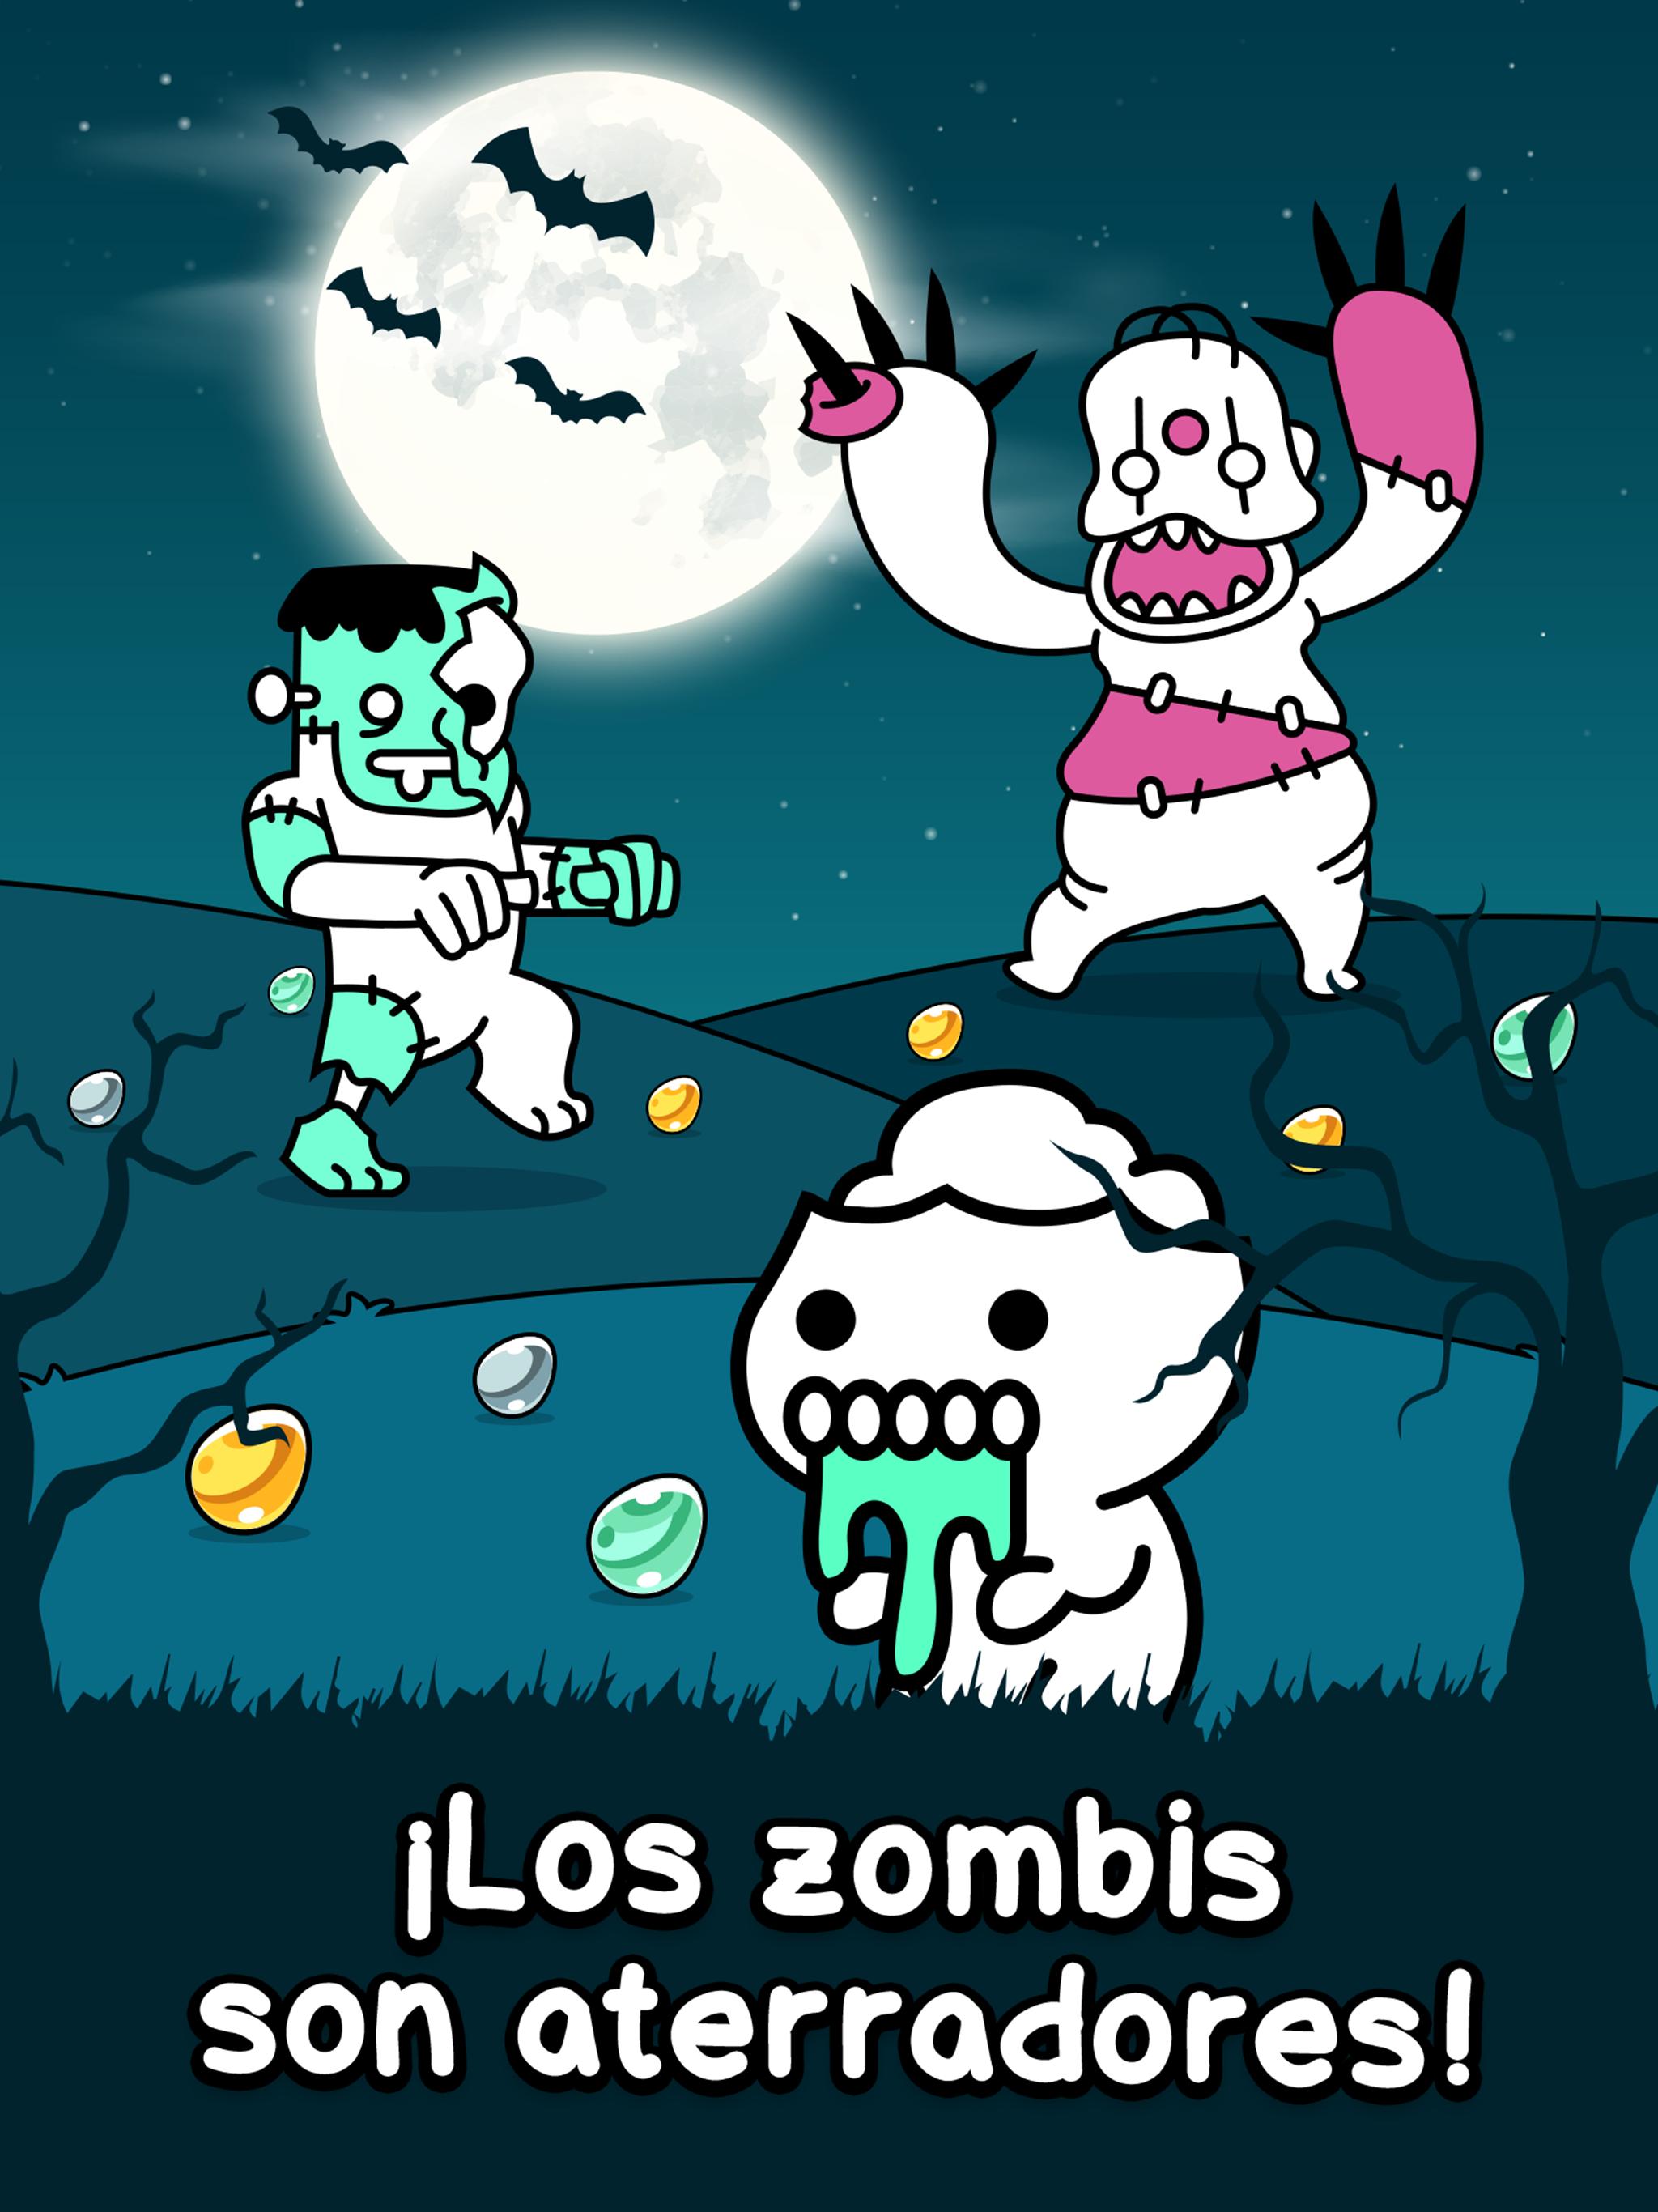 El Apocalipsis Zombie De Roblox Ten Cuidado Codes For Games On